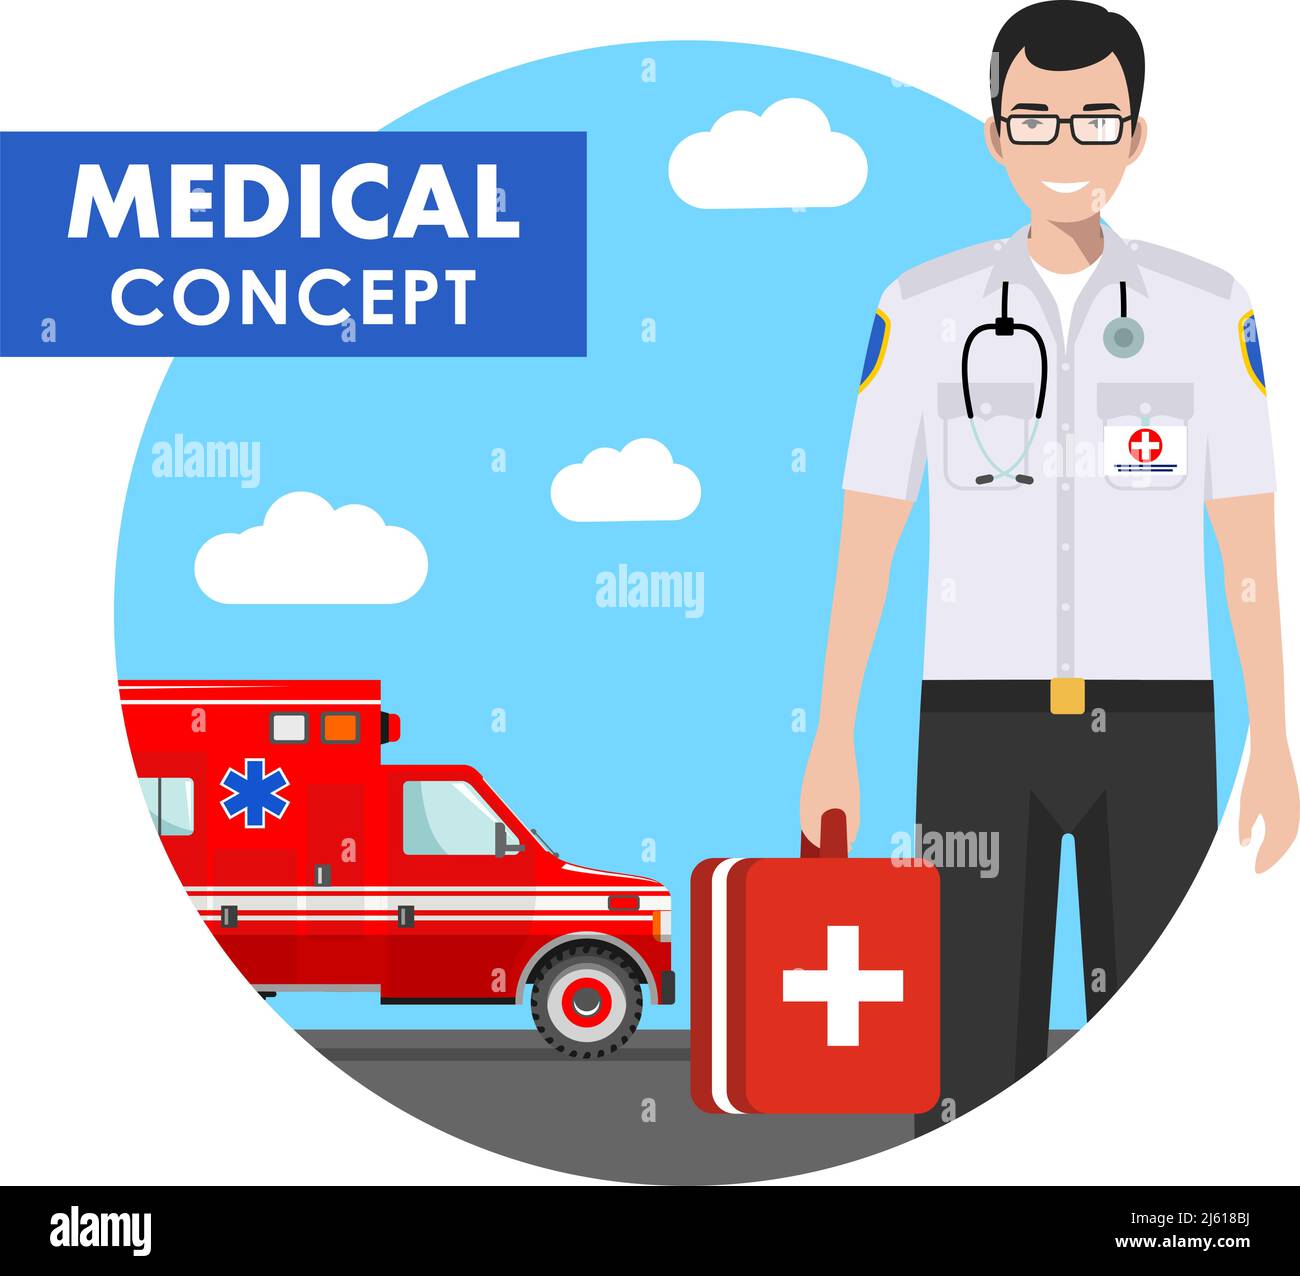 Concept médical. Illustration détaillée de personnes médicales en uniforme sur fond avec voiture d'ambulance dans le style plat. Illustration vectorielle. Illustration de Vecteur